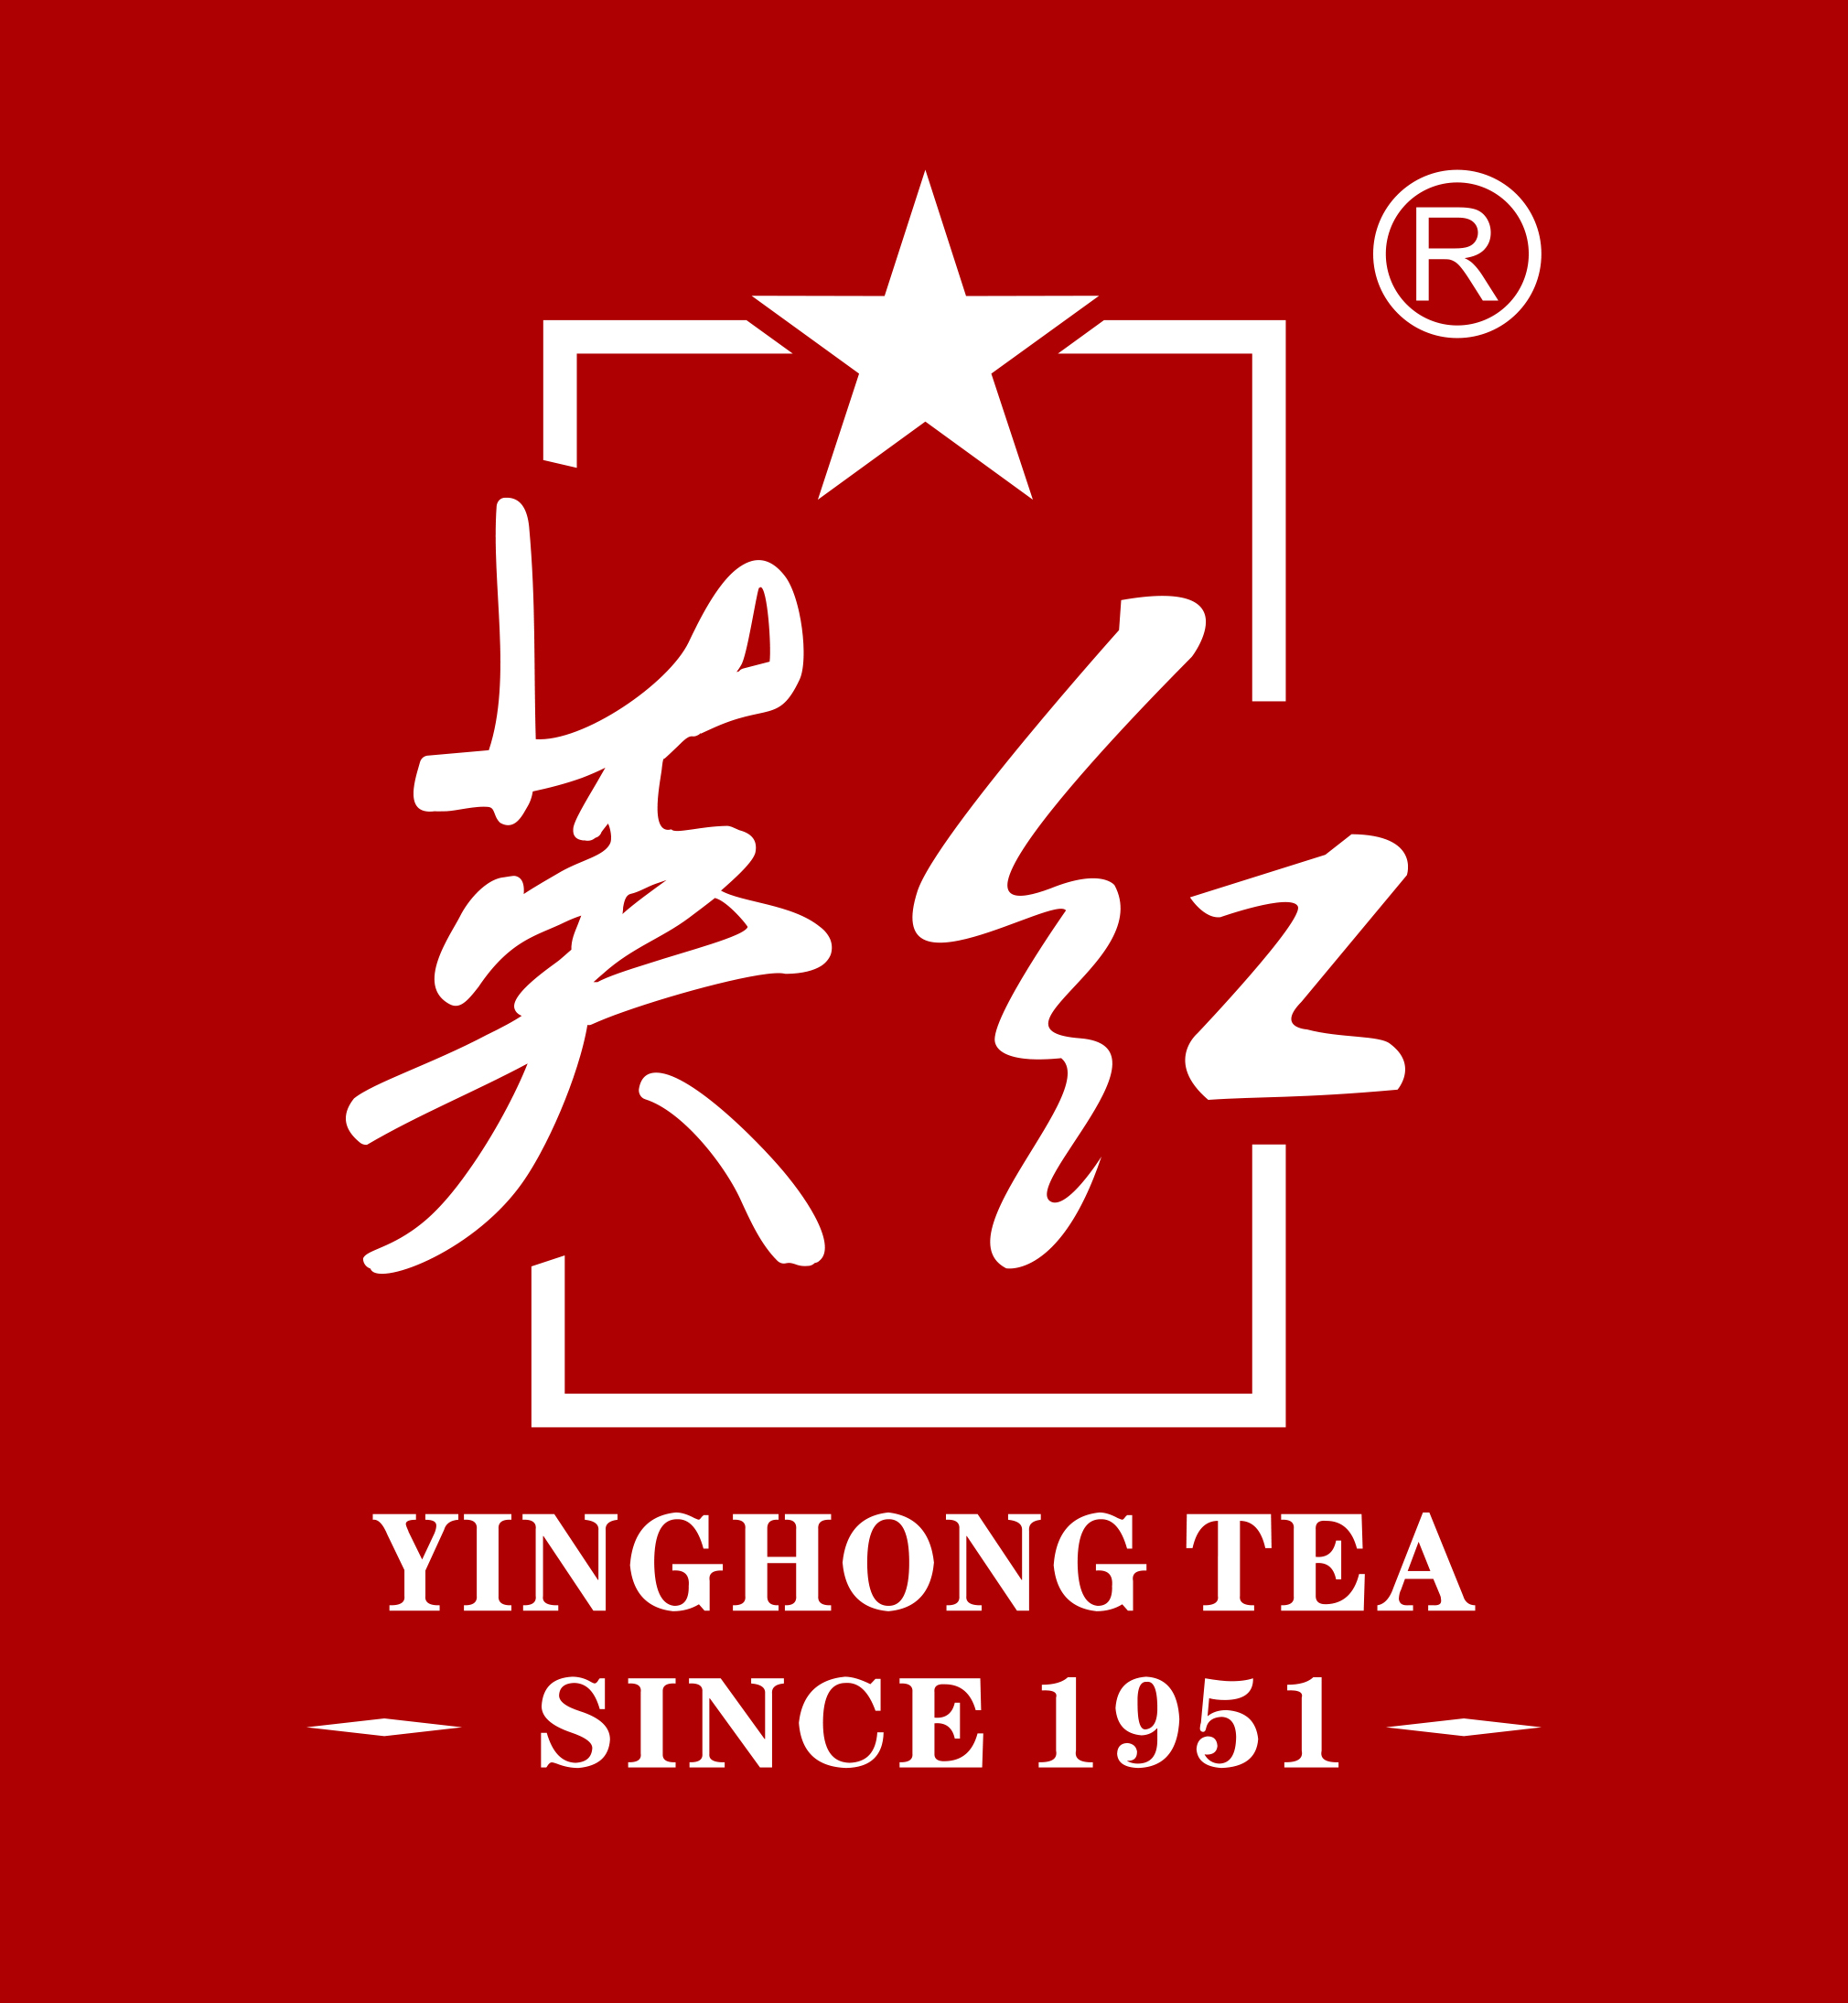 廣東英紅茶業集團